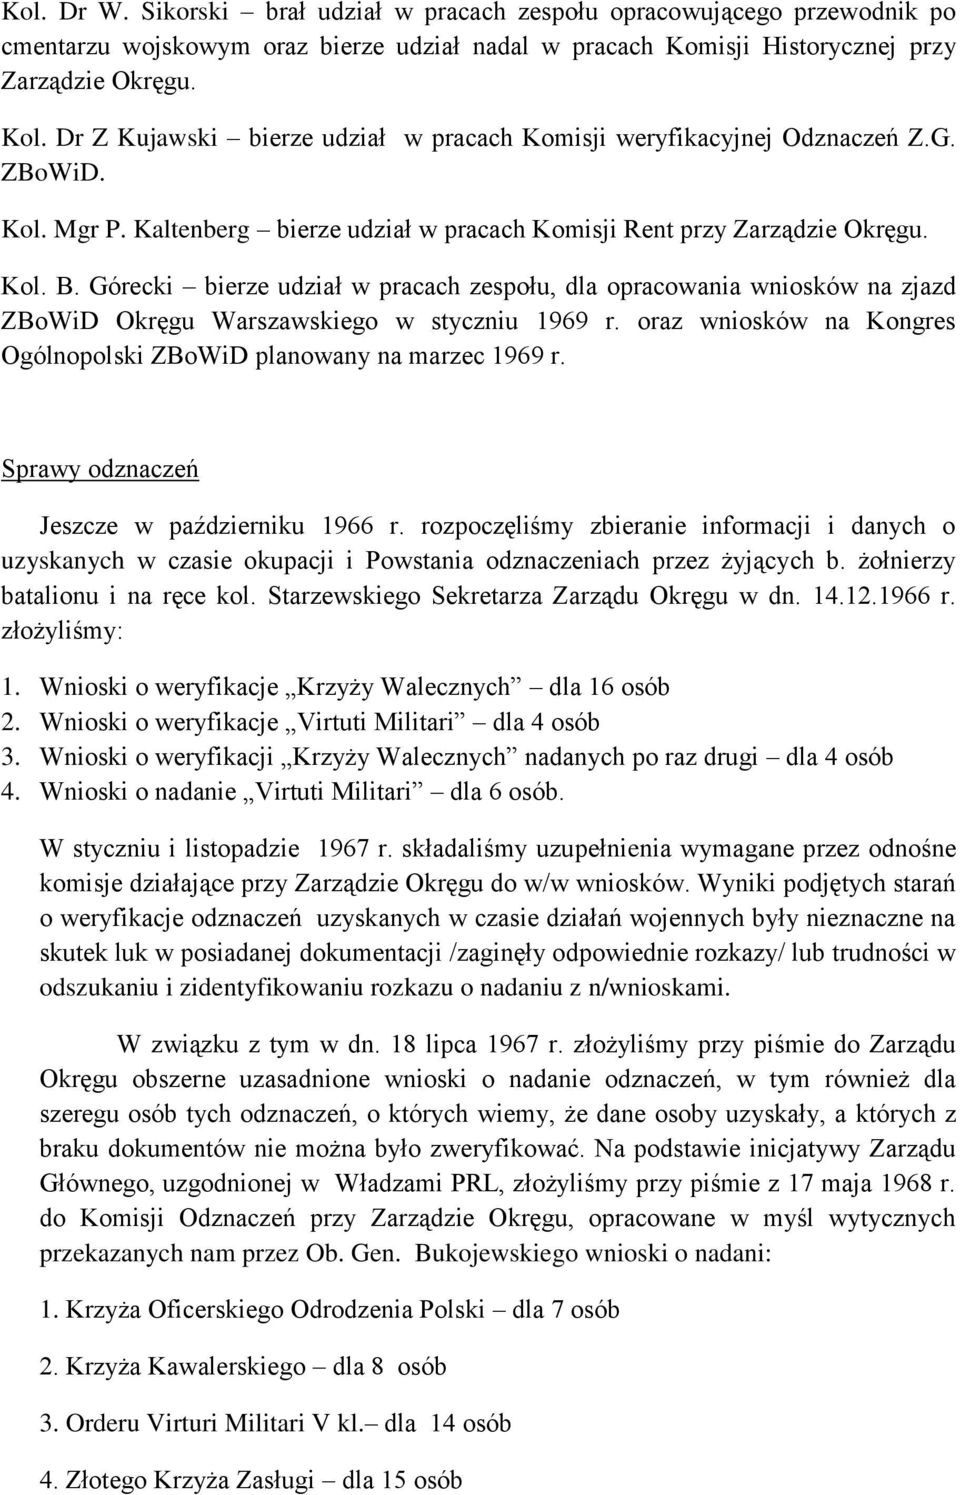 Górecki bierze udział w pracach zespołu, dla opracowania wniosków na zjazd ZBoWiD Okręgu Warszawskiego w styczniu 1969 r. oraz wniosków na Kongres Ogólnopolski ZBoWiD planowany na marzec 1969 r.